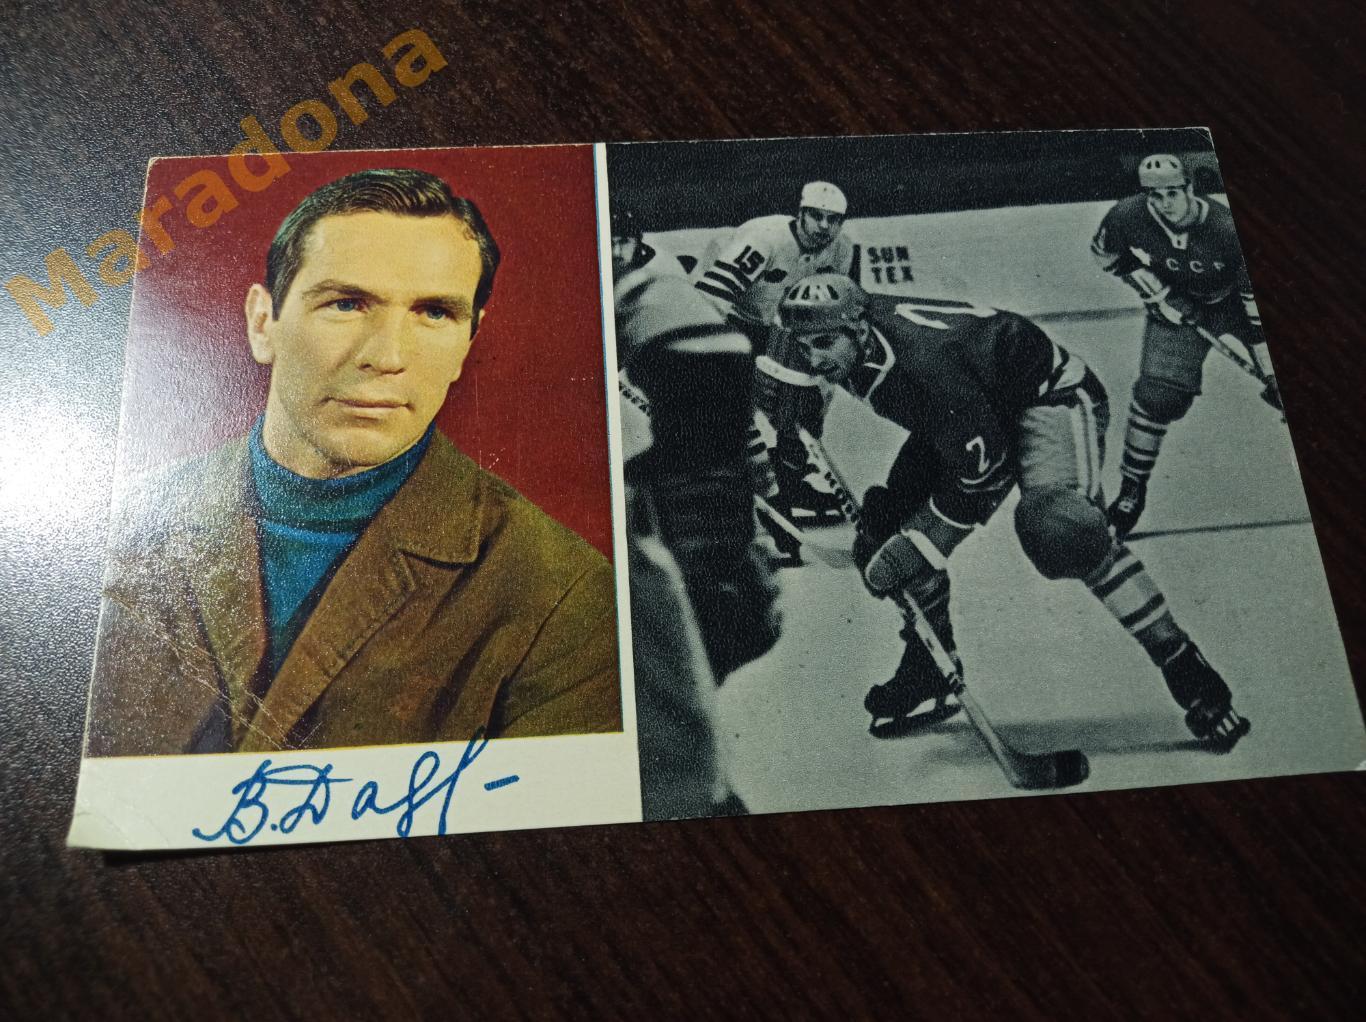 Виталий Давыдов, чемпионат мира по хоккею 1970